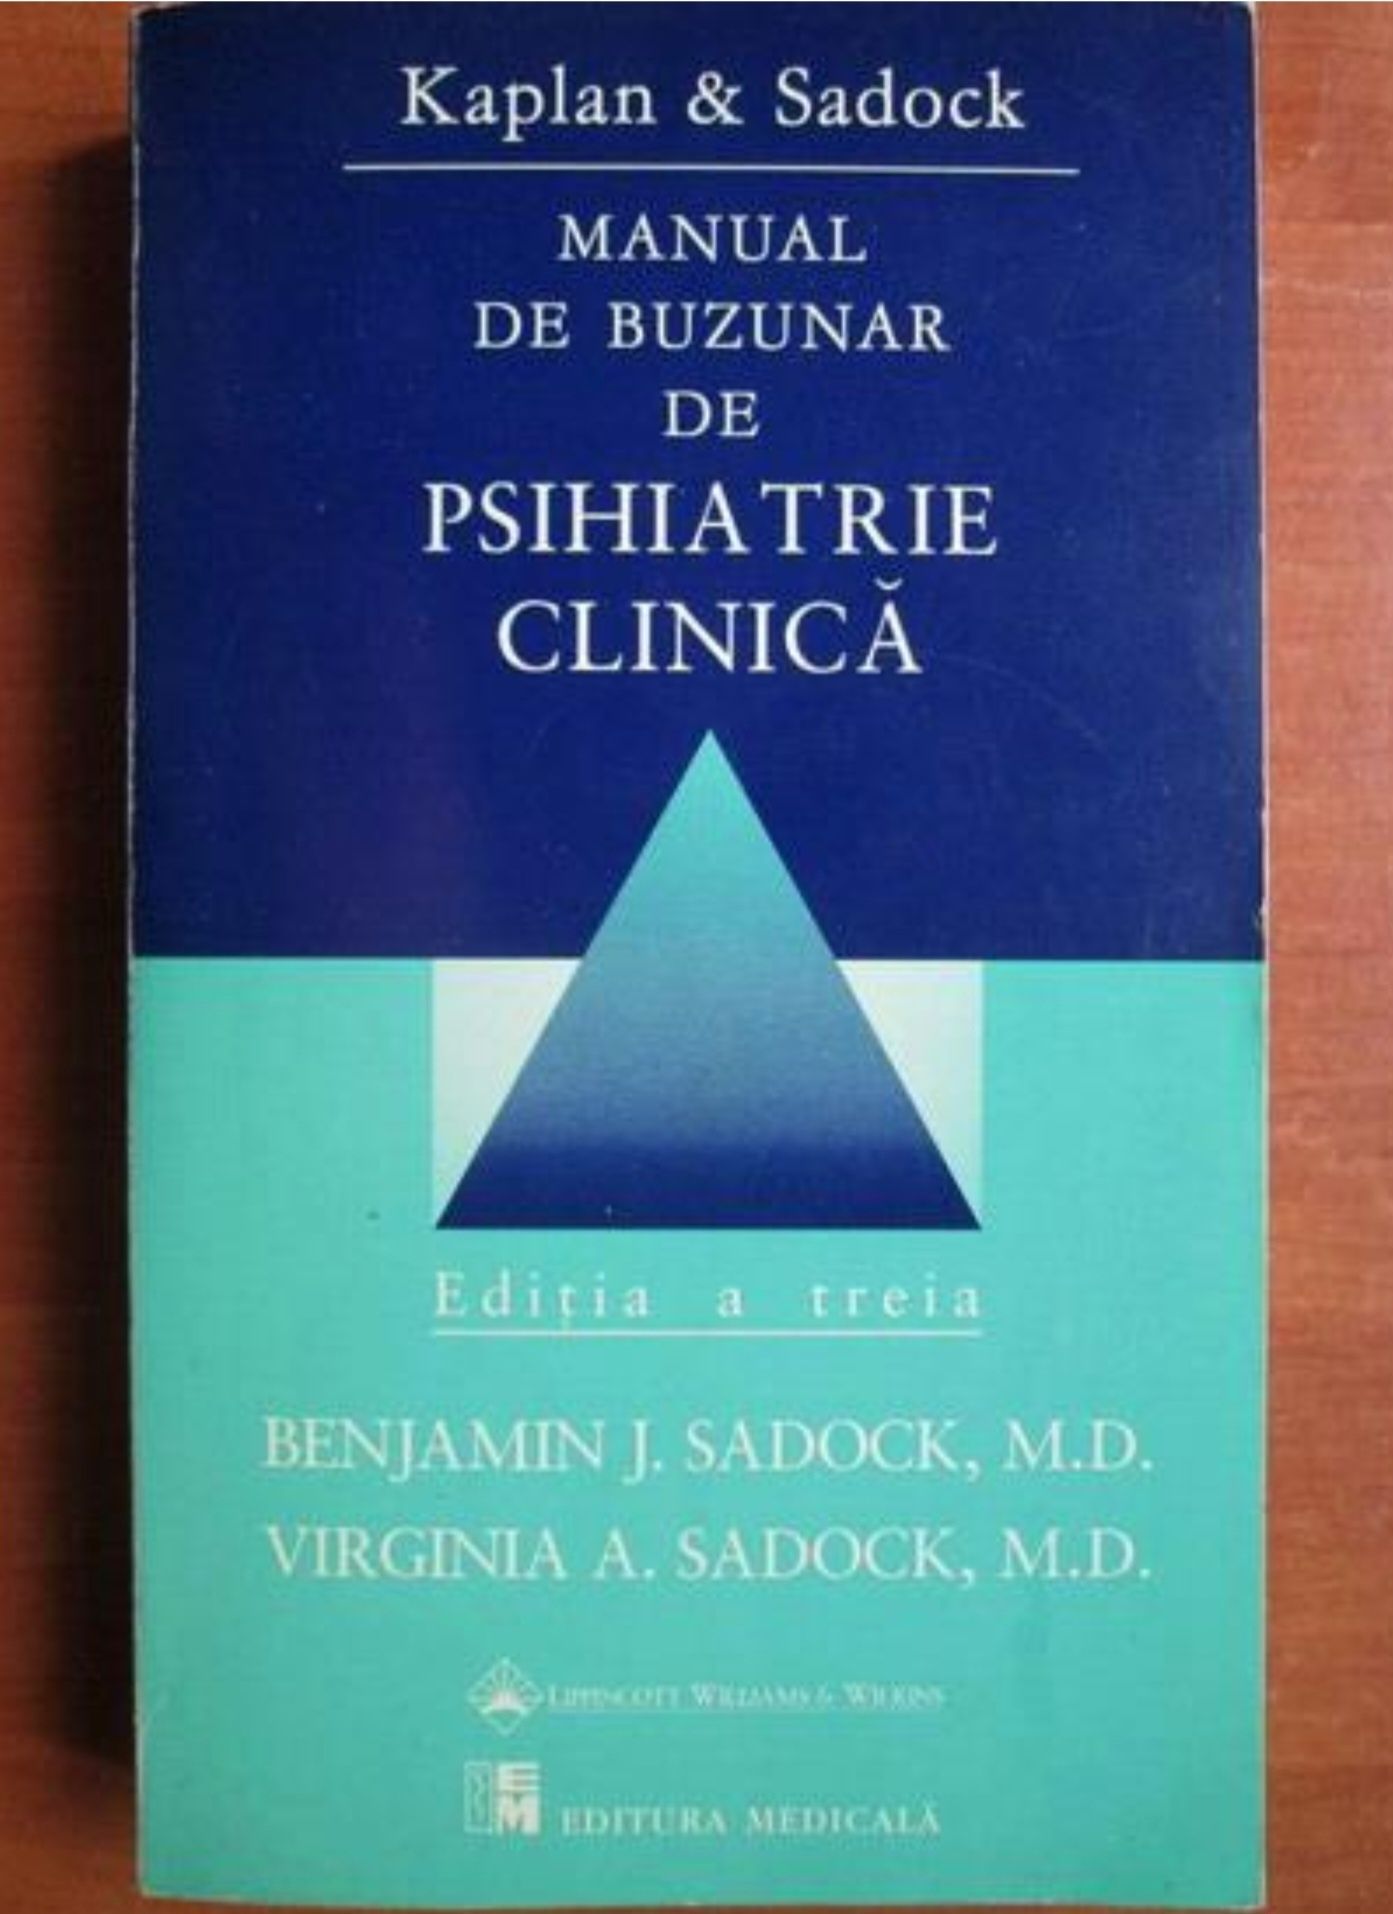 Manual de buzunar de psihiatrie clinica Kaplan